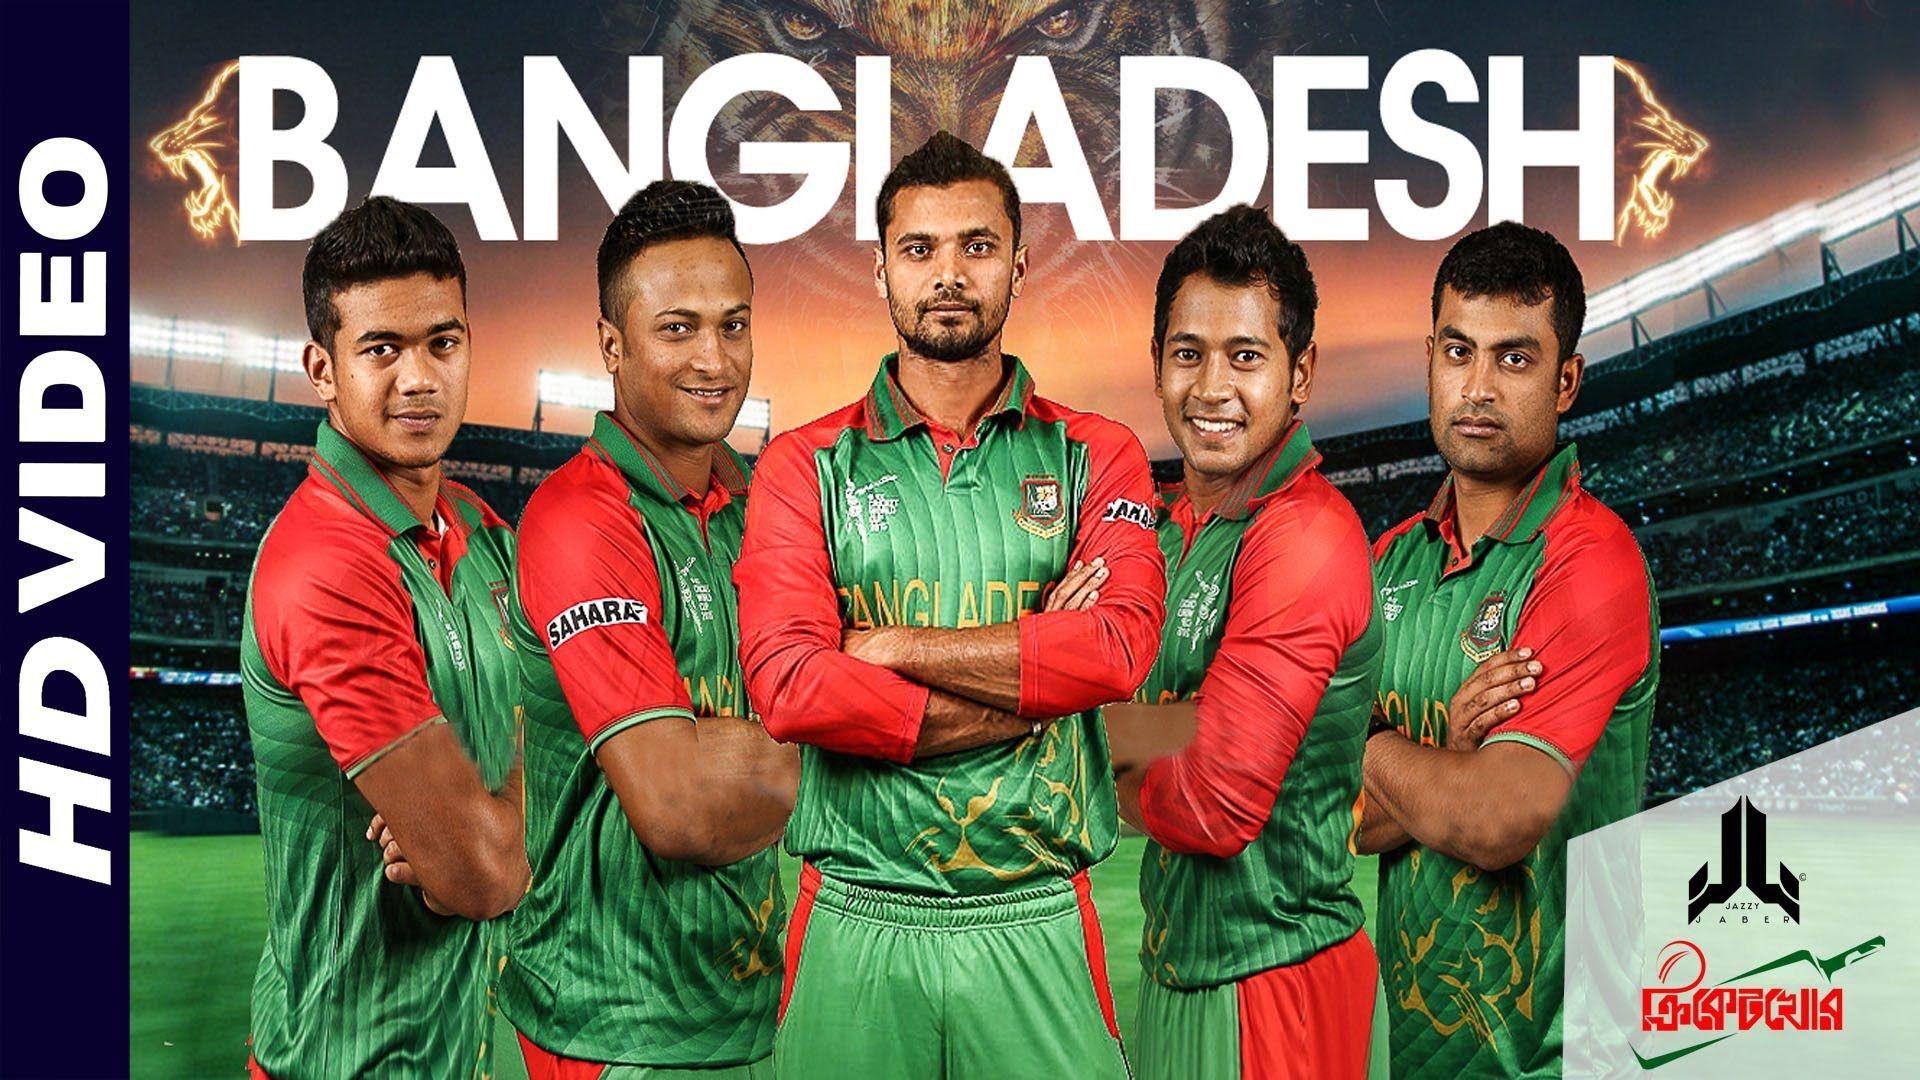 bangladesh cricket team HD wallpaper .com